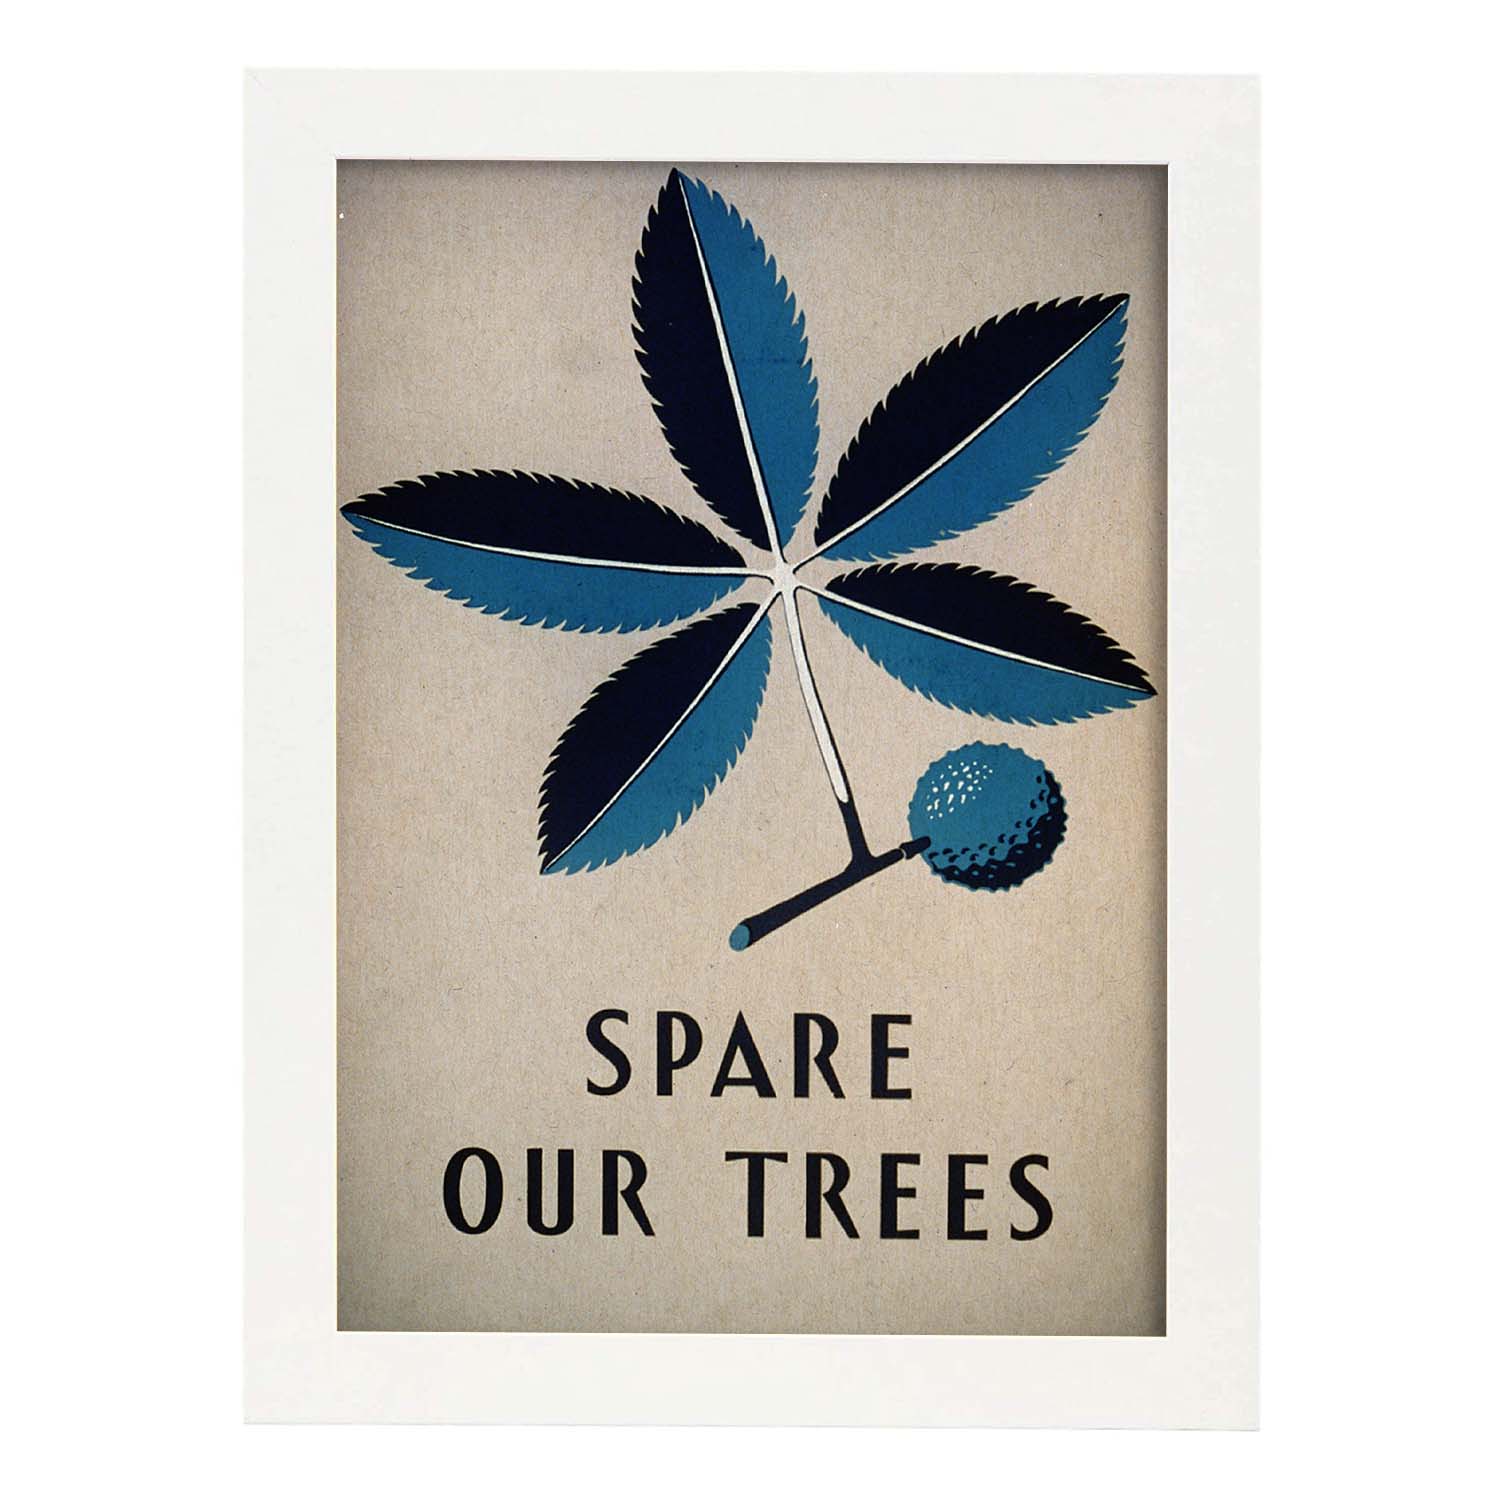 Poster vintage. Cartel vintage Spare our trees Ohio de 1938.-Artwork-Nacnic-A4-Marco Blanco-Nacnic Estudio SL